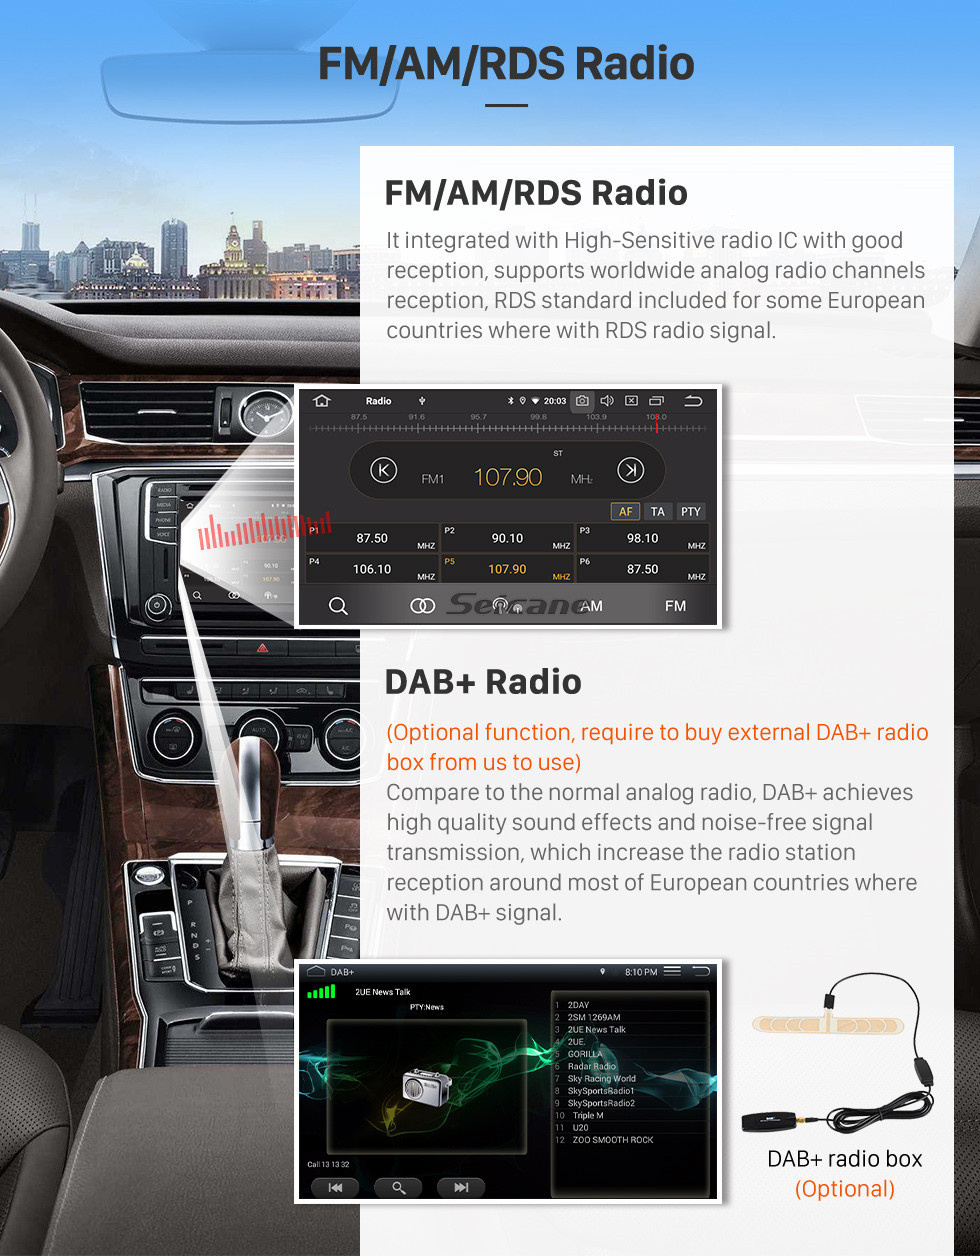 Seicane Android 13.0 para 2008 2009 2010-2014 Skoda Fabia Radio 10,1 polegadas Sistema de navegação GPS Bluetooth HD Touchscreen Carplay suporte DVR